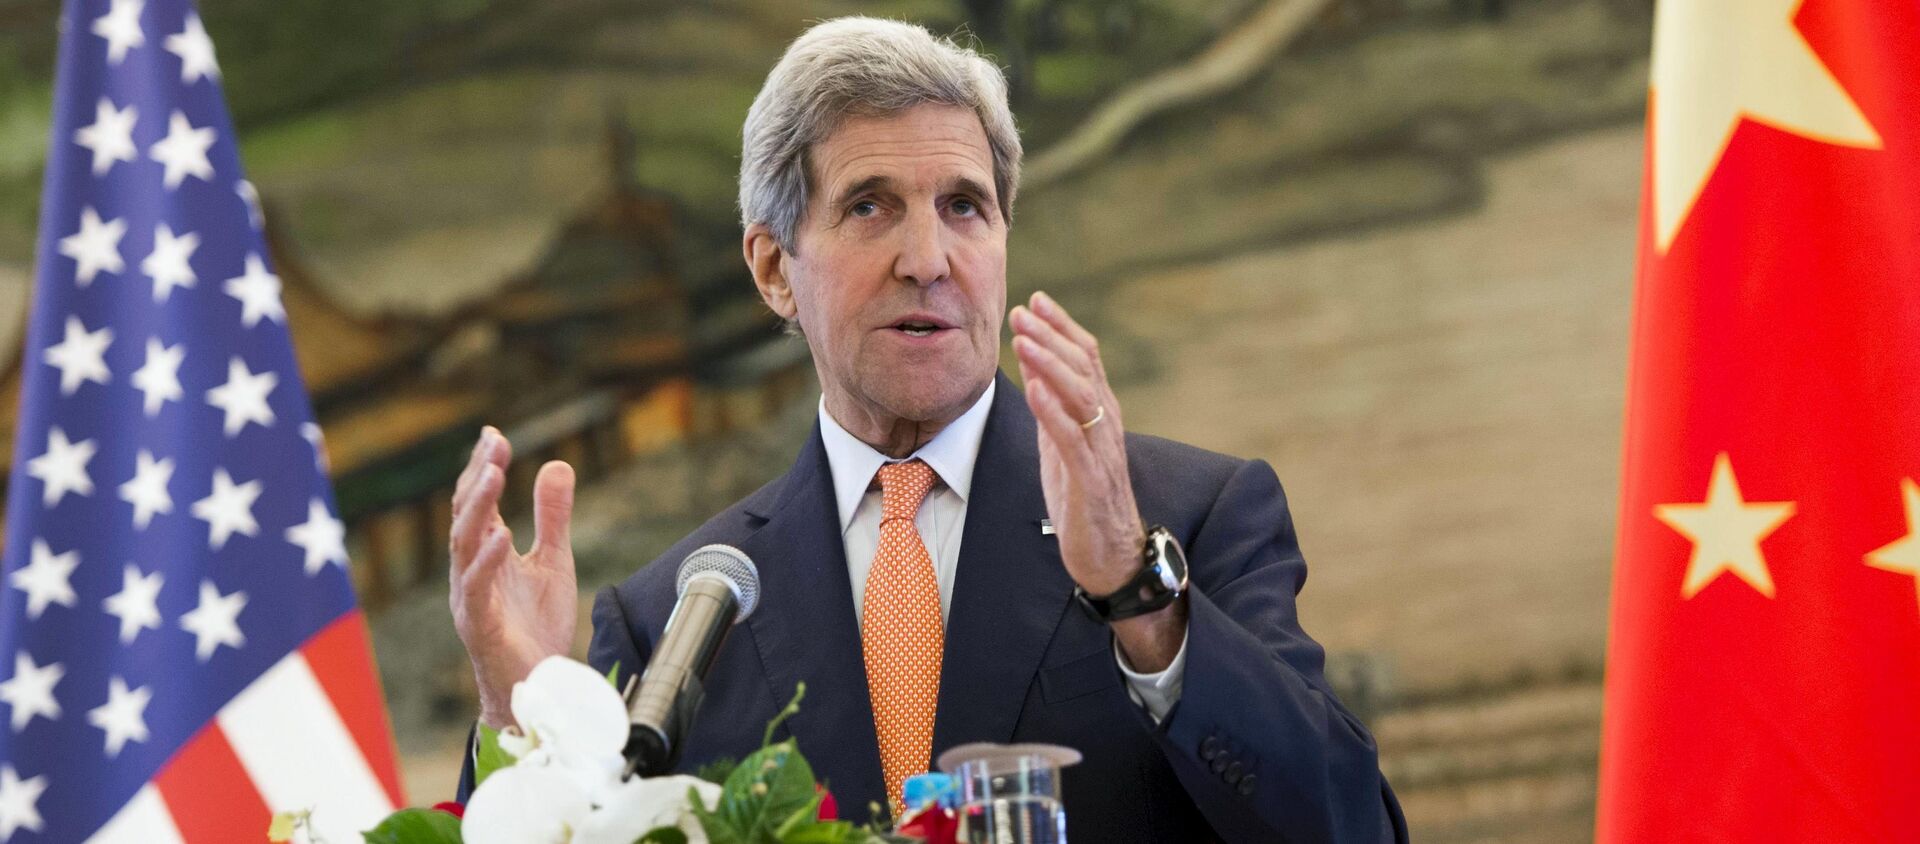 Ngoại trưởng Hoa Kỳ John Kerry phát biểu trong cuộc họp báo chung sau cuộc họp với Bộ trưởng Ngoại giao Trung Quốc Vương Nghị tại Bộ Ngoại giao ở Bắc Kinh, Trung Quốc ngày 16 tháng 5 năm 2015 - Sputnik Việt Nam, 1920, 20.04.2021